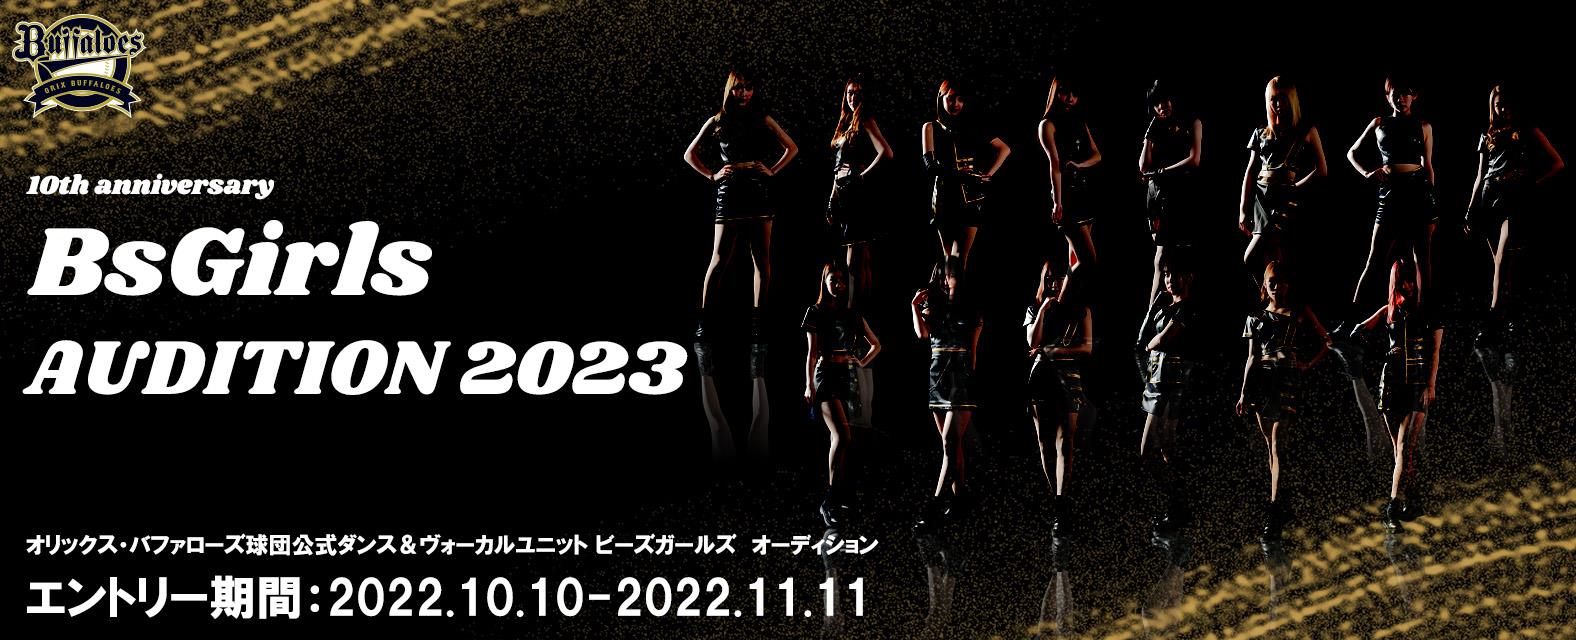 オリックス・バファローズ × エイベックスBsGirls AUDITION 2023